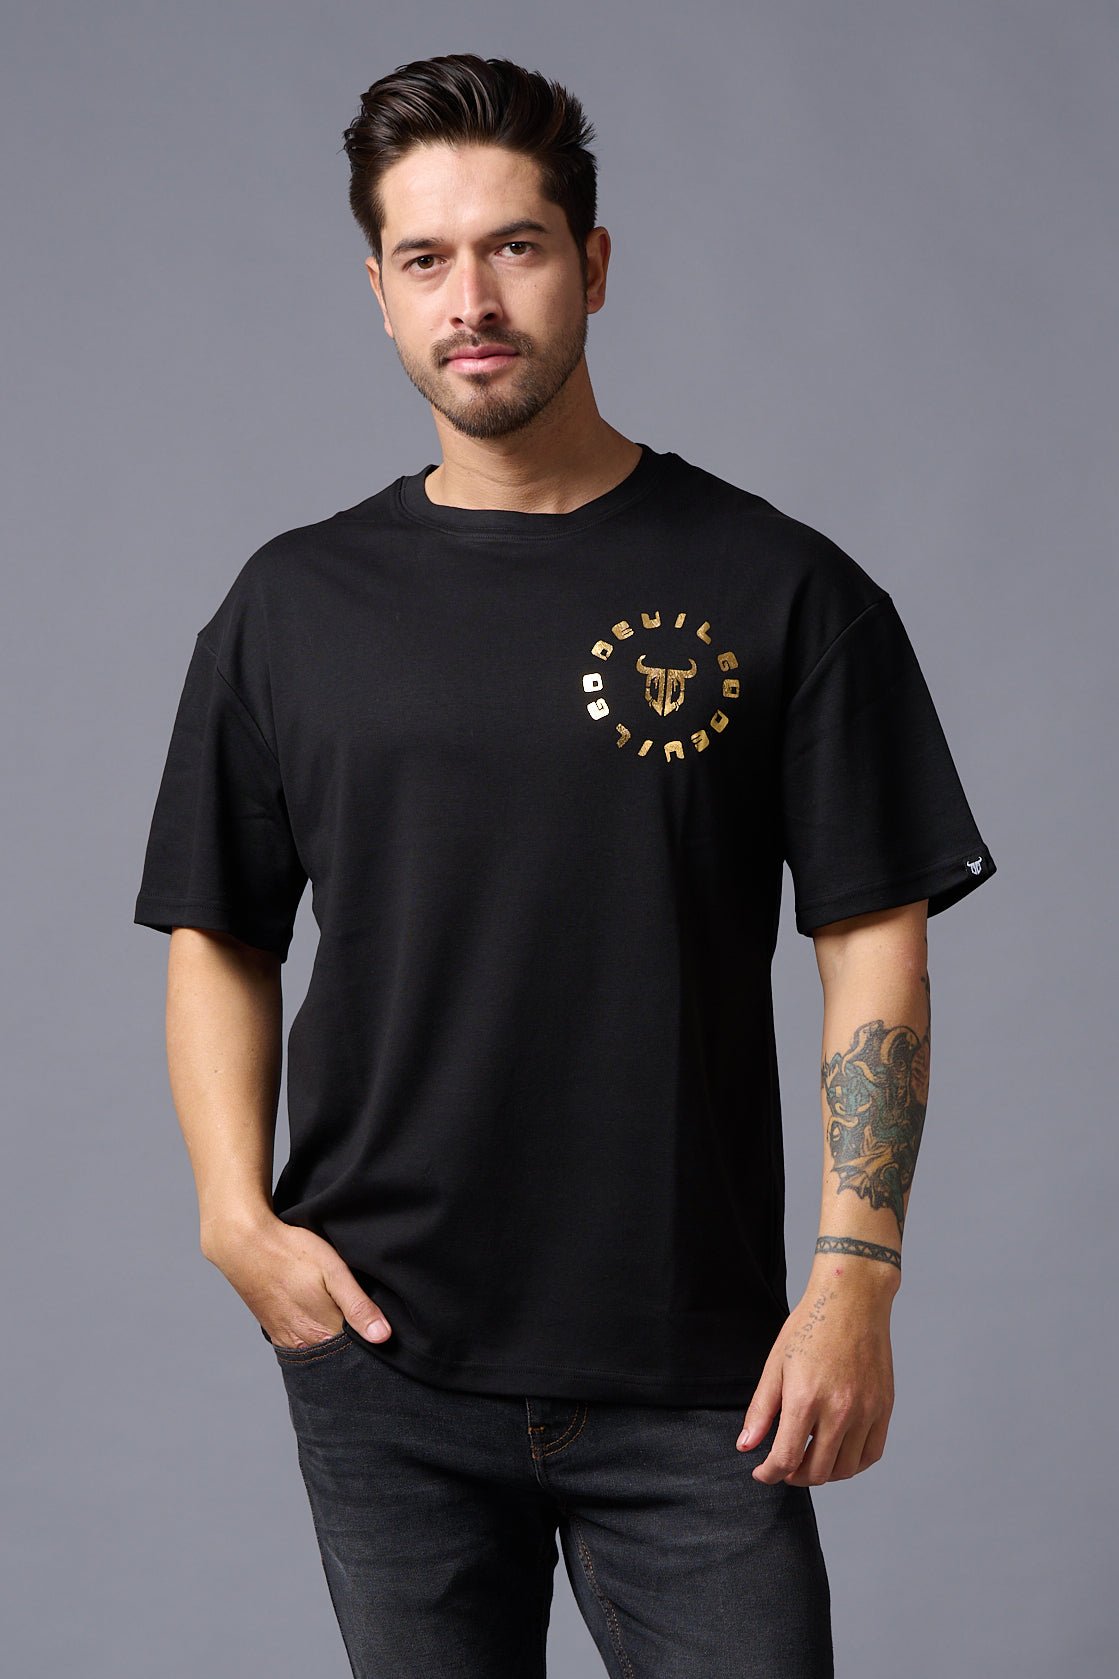 Chinese DEVIL (Gold Foil Print) Black Oversized T-Shirt for Men - Go Devil